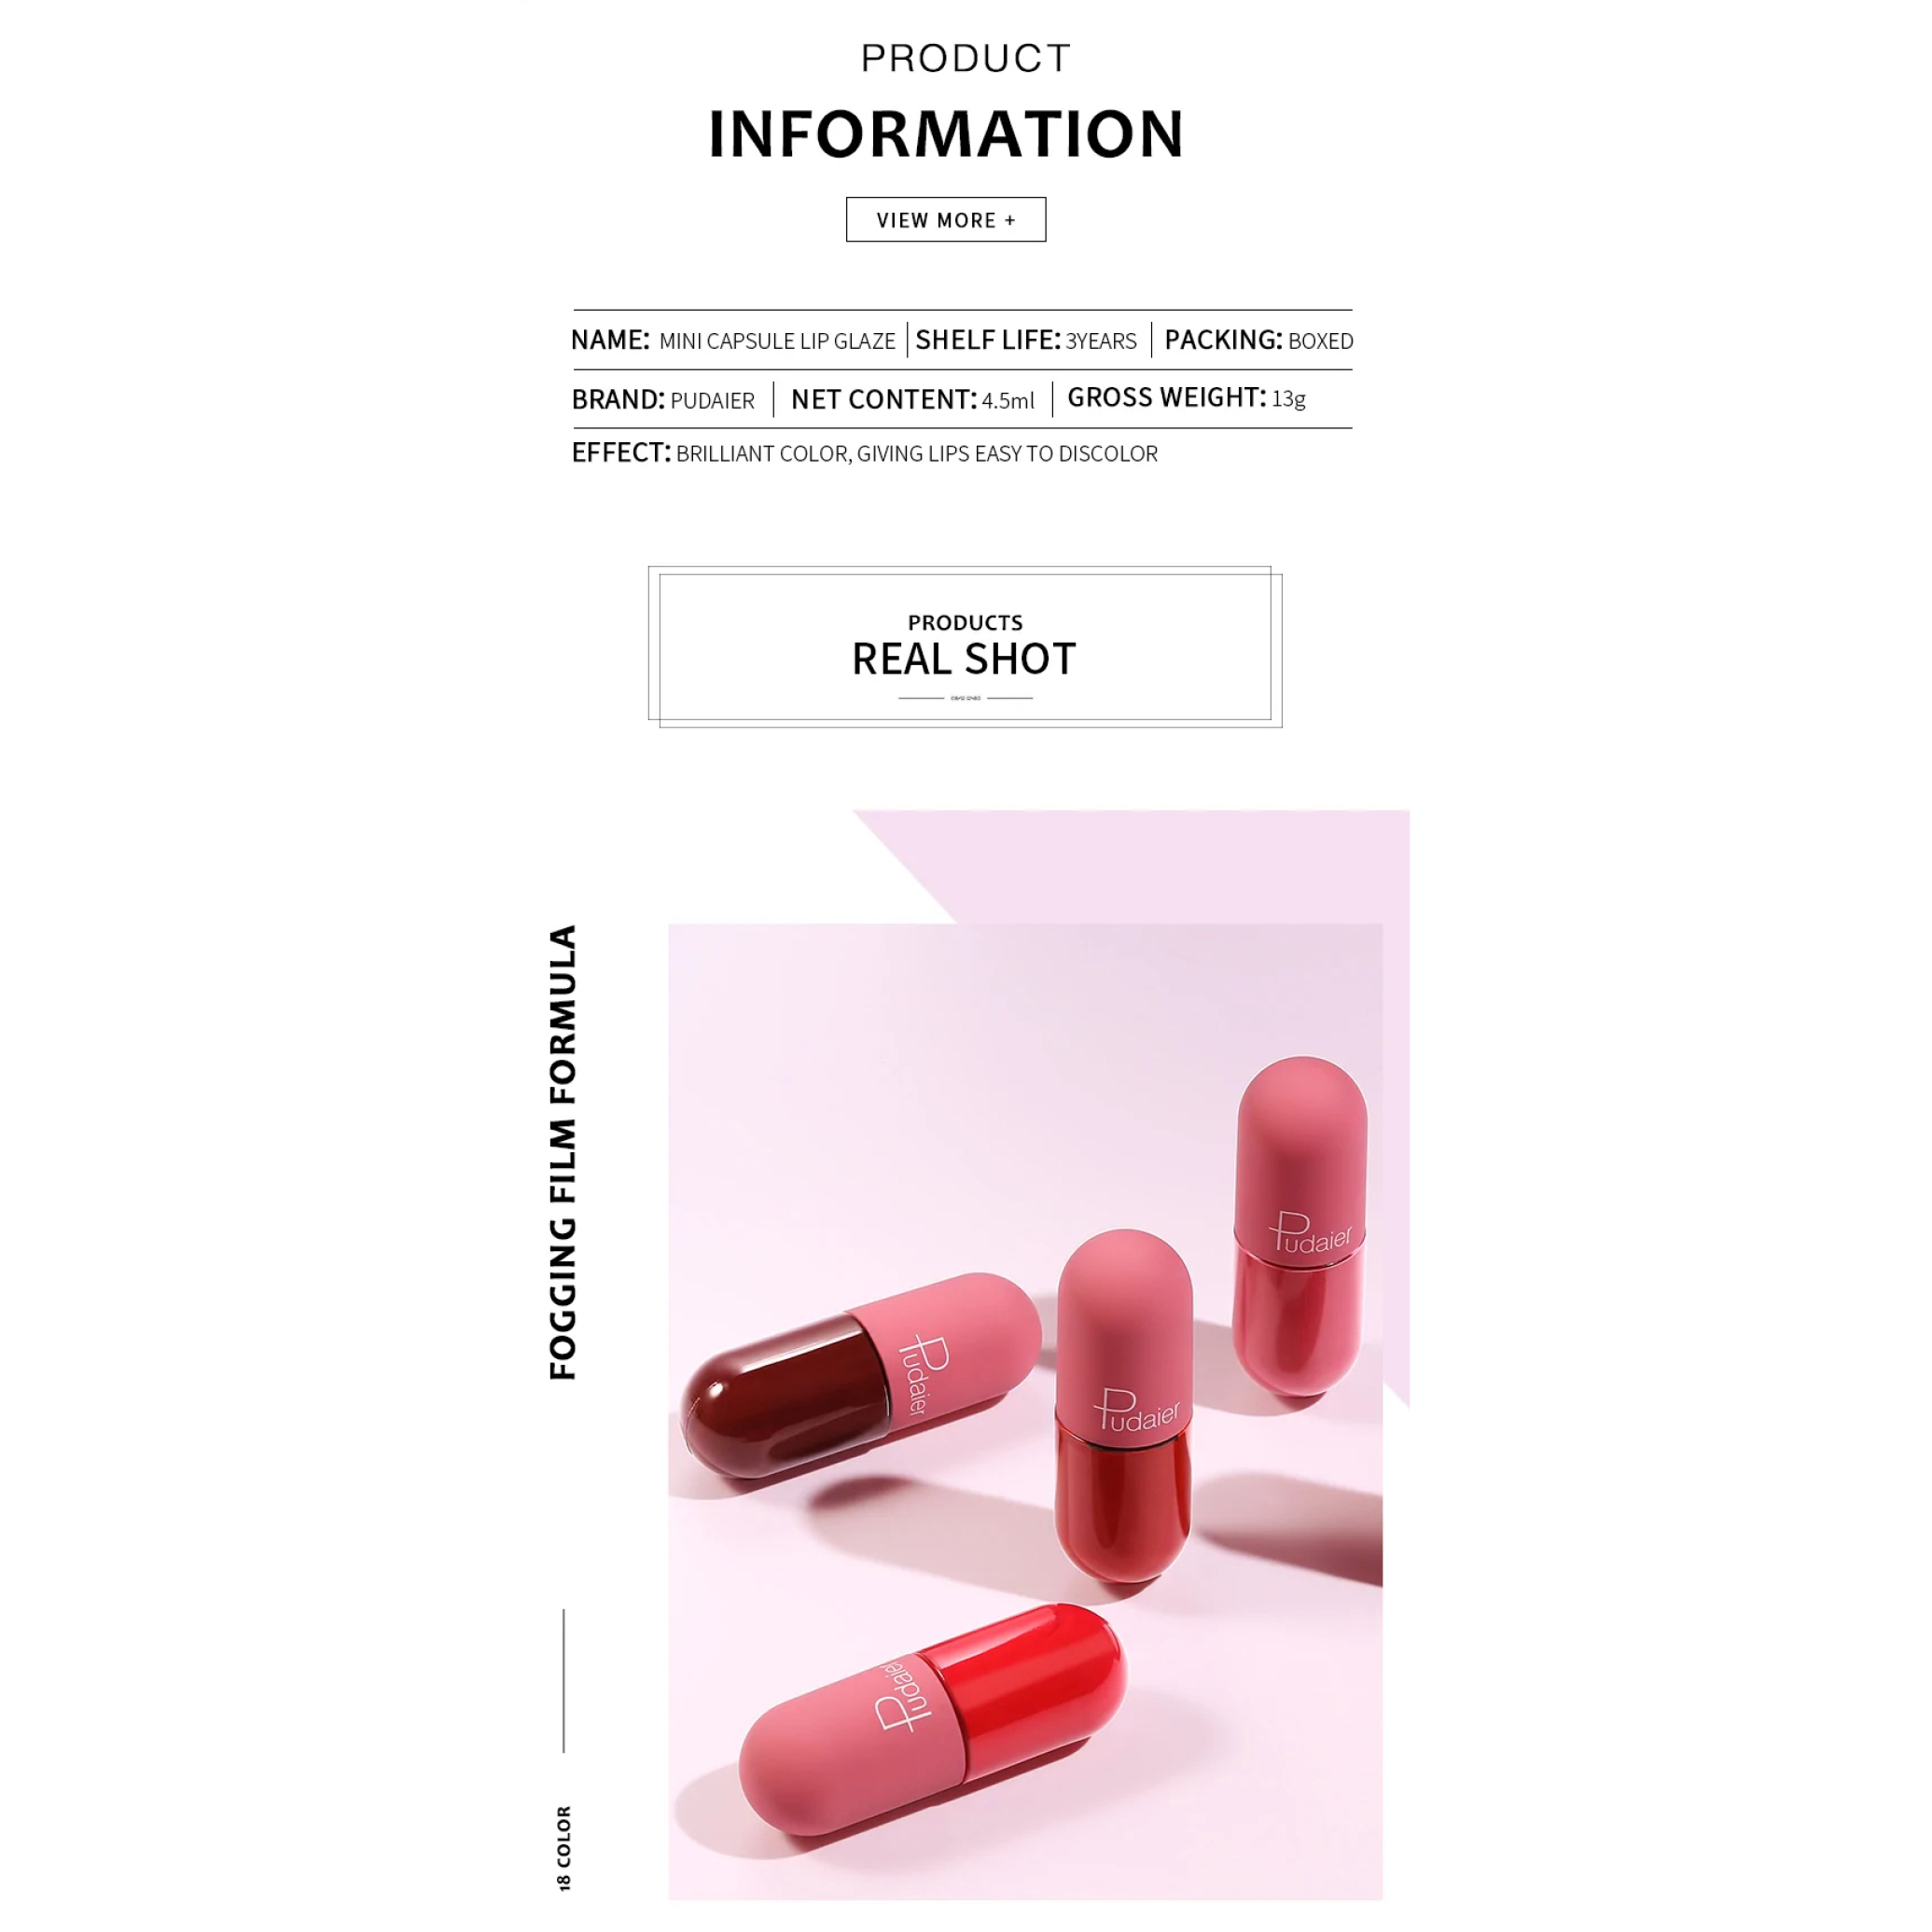  رژ لب مایع مات فوق ماندگار کپسولی پودایر شماره 900 - Pudaier matte liquid pills lipstick 